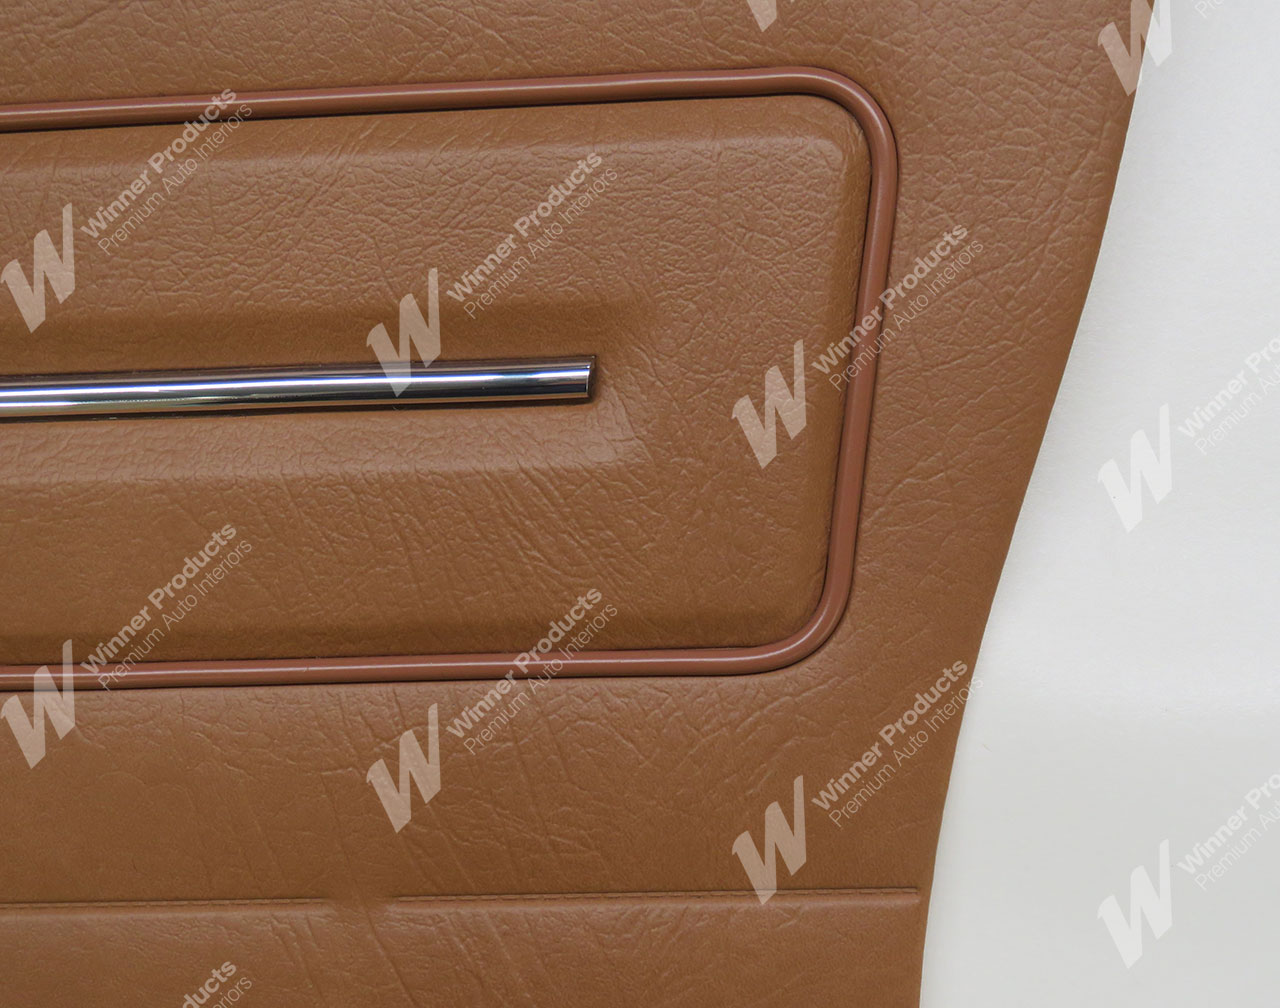 Holden Kingswood HJ Kingswood Panel Van 64V Gazelle Door Trims (Image 3 of 3)